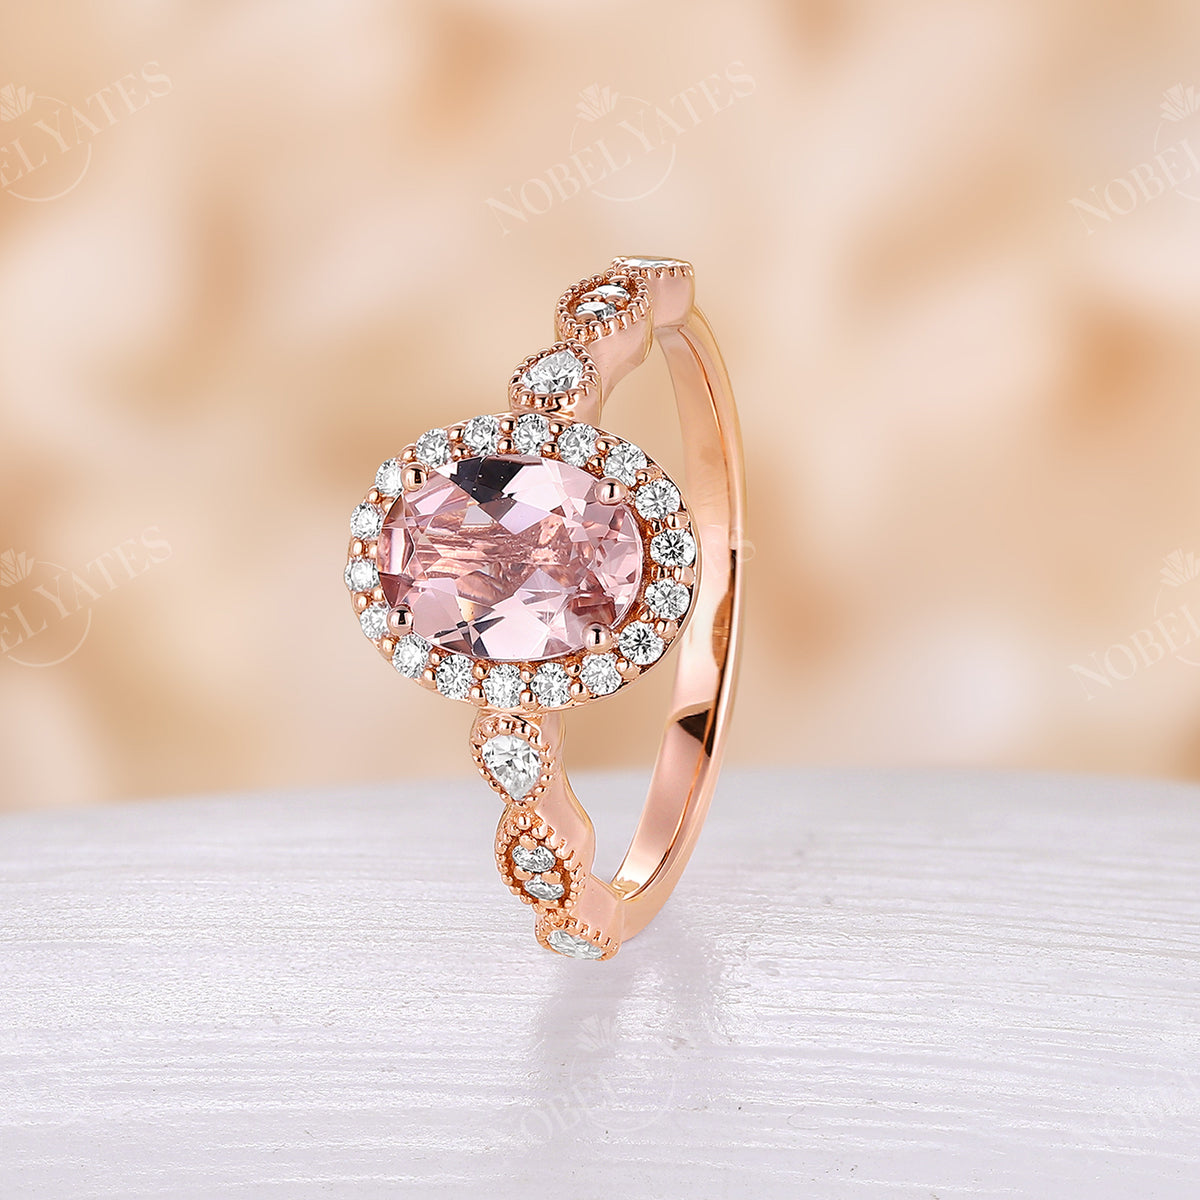 Vintage Orange Pink Morganite Halo & Milgrain Engagement Ring Rose Gold